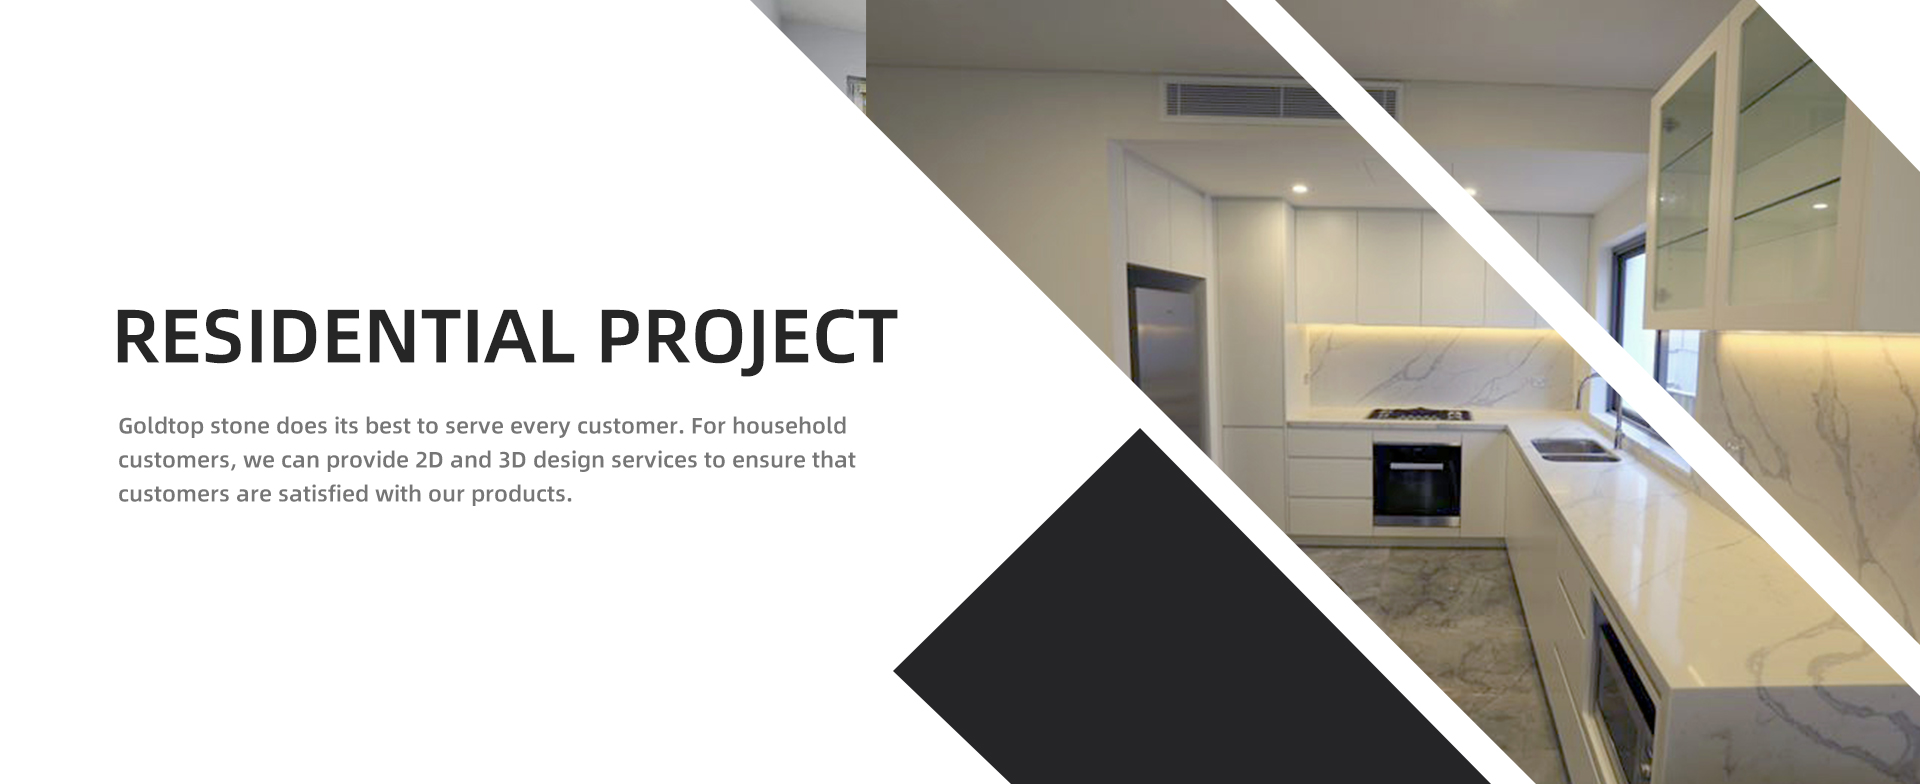 Residentieel project Goldtop steen doet zijn best om elke klant van dienst te zijn. Voor huishoudelijke klanten kunnen we 2D- en 3D-ontwerpdiensten leveren om ervoor te zorgen dat klanten tevreden zijn met onze producten.